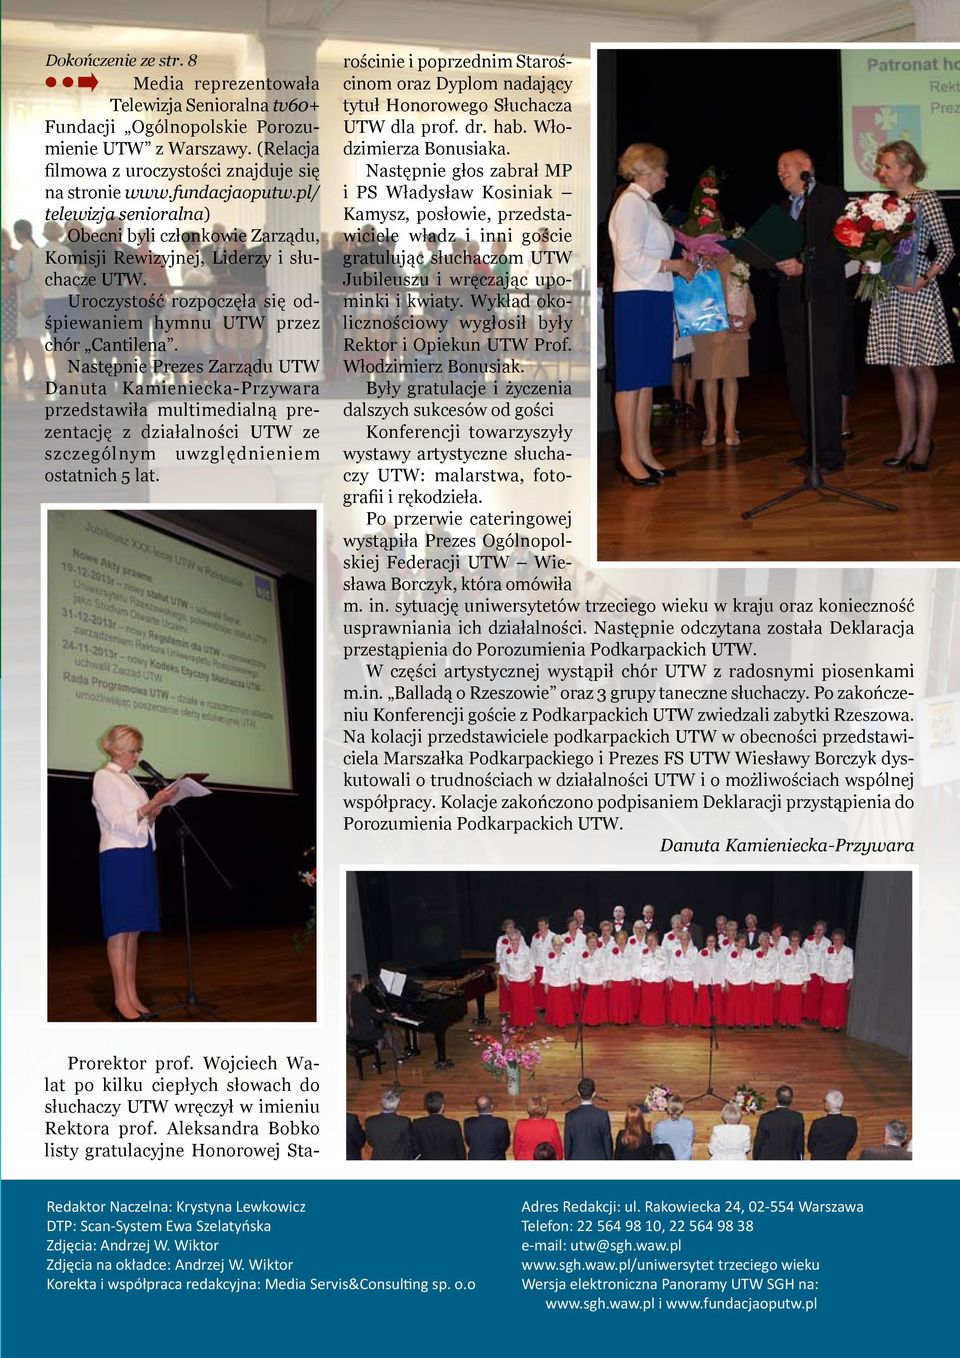 Następnie Prezes Zarządu UTW Danuta Kamieniecka-Przywara przedstawiła multimedialną prezentację z działalności UTW ze szczególnym uwzględnieniem ostatnich 5 lat.